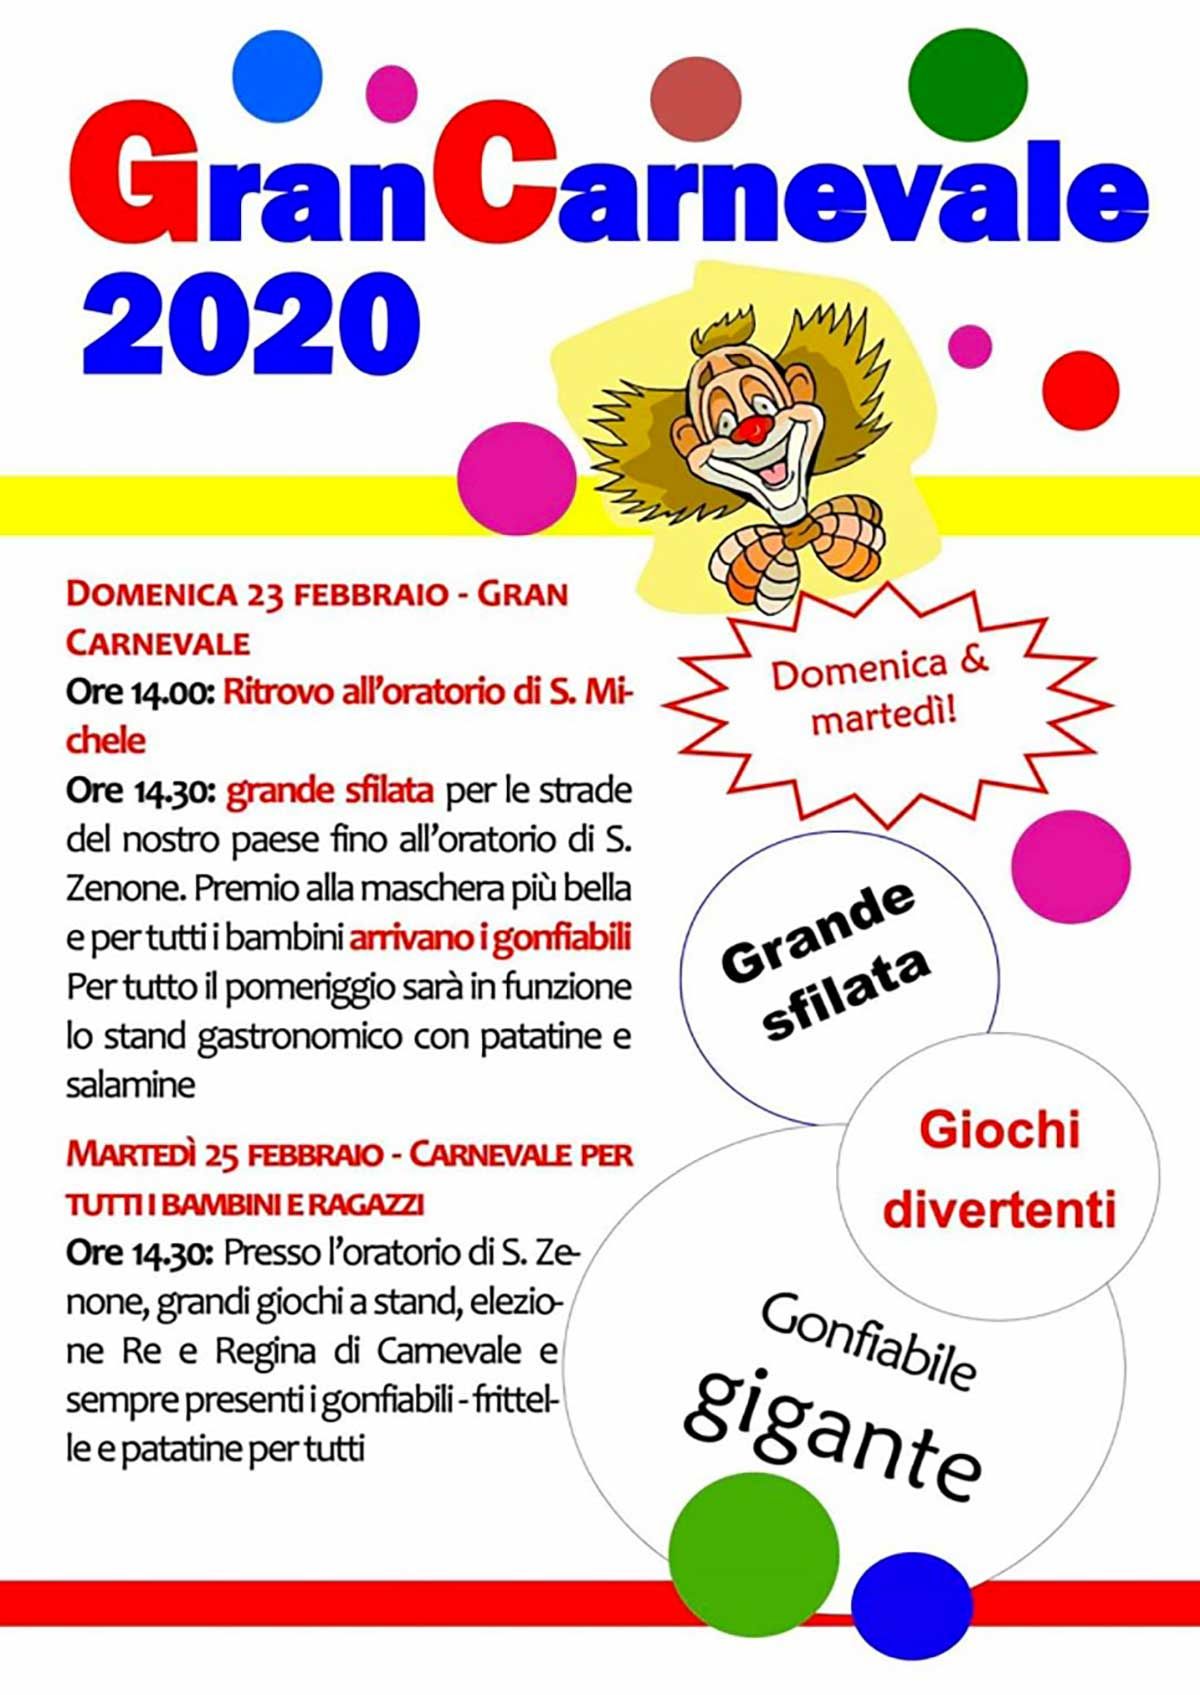 Gran-Carnevale-Prevalle-2020